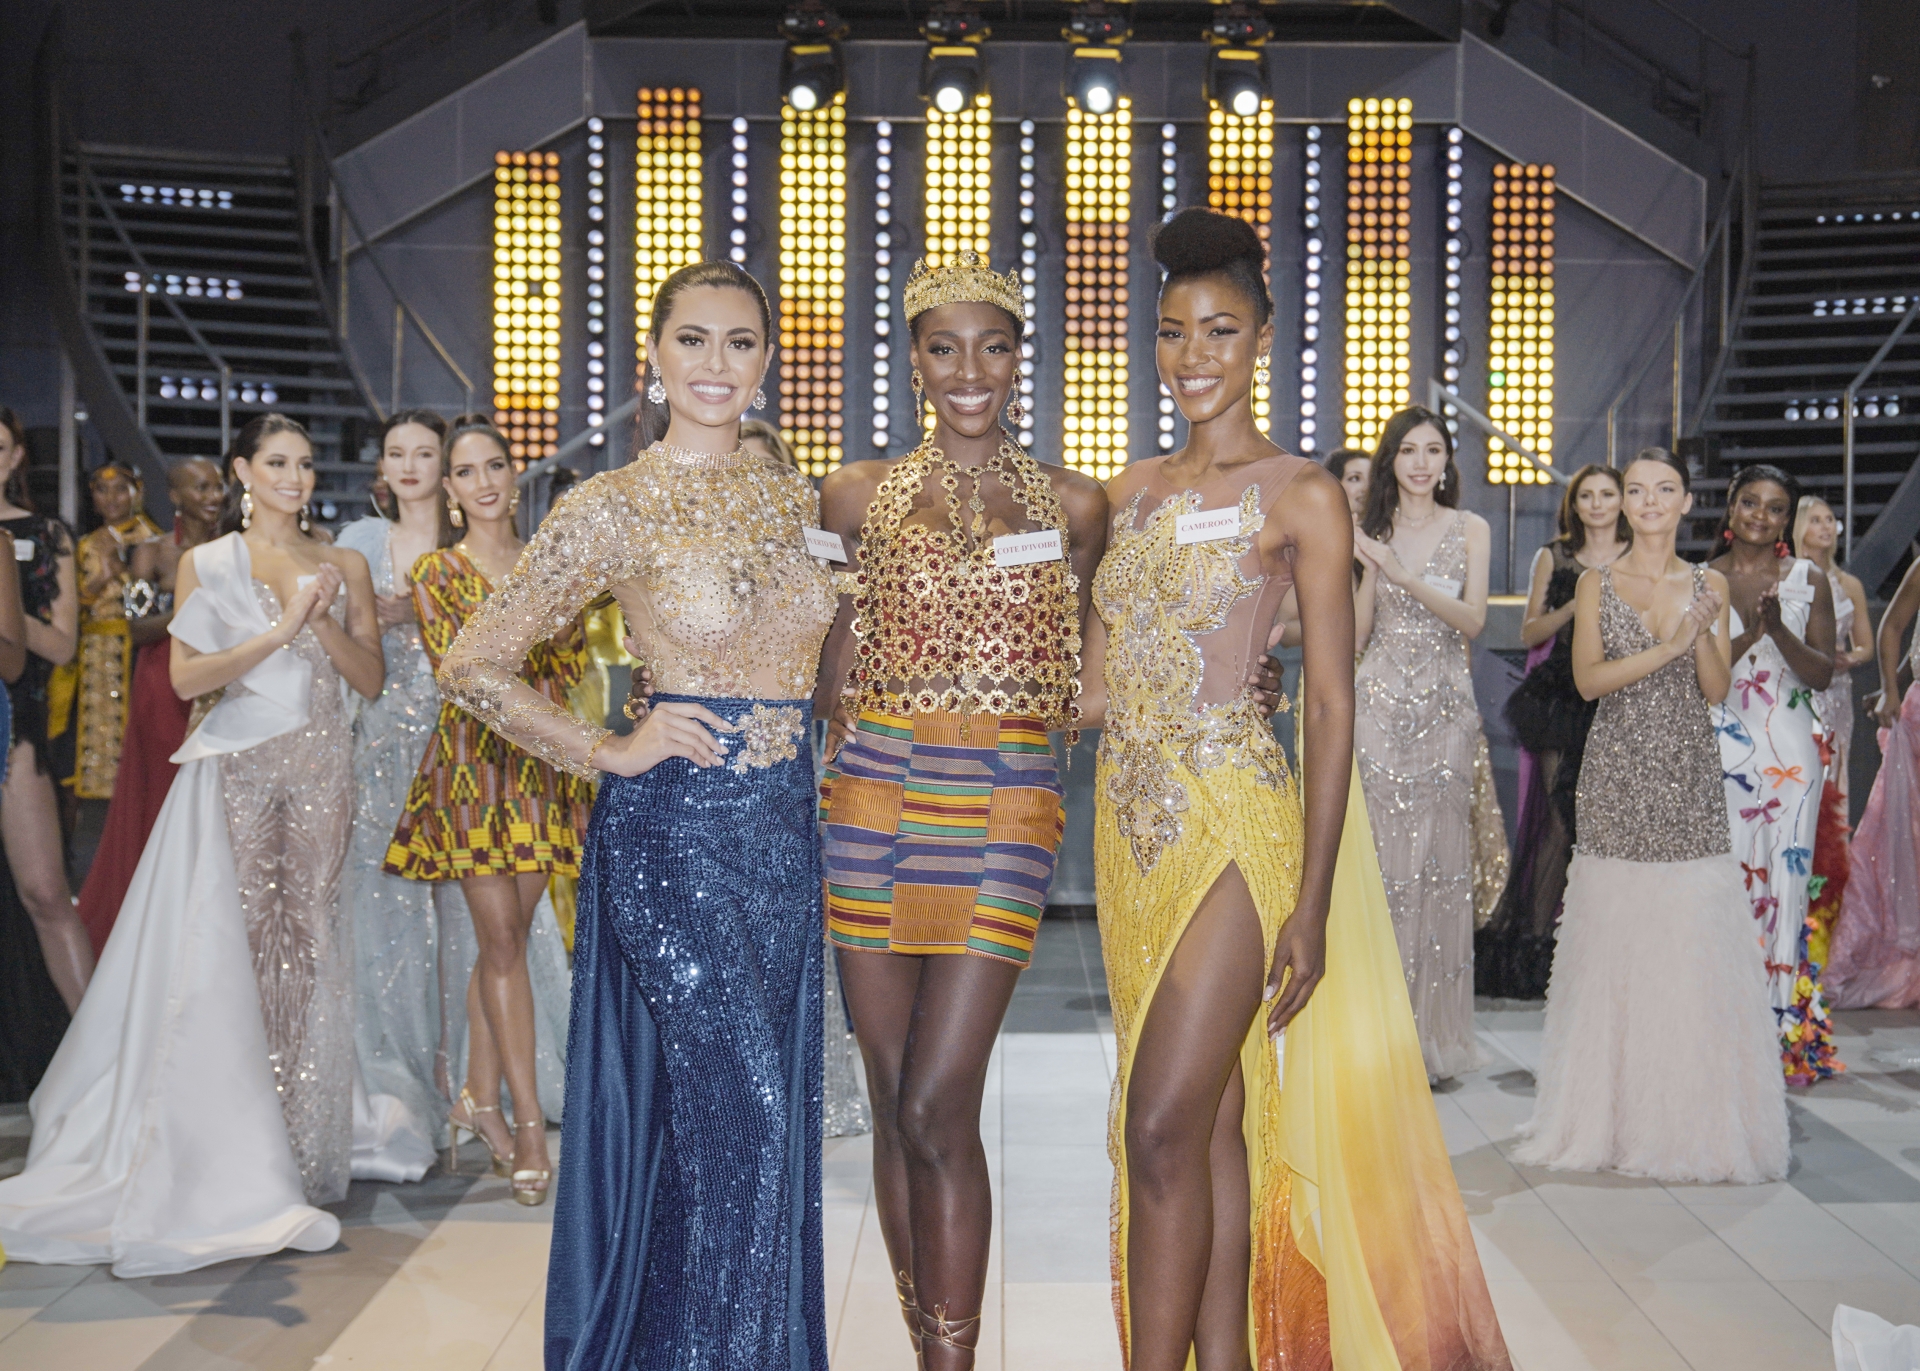 Top 3 chiến thắng phần thi Top Model thuộc về: Puerto Rico, Cote D'Ivoire và Cameroon